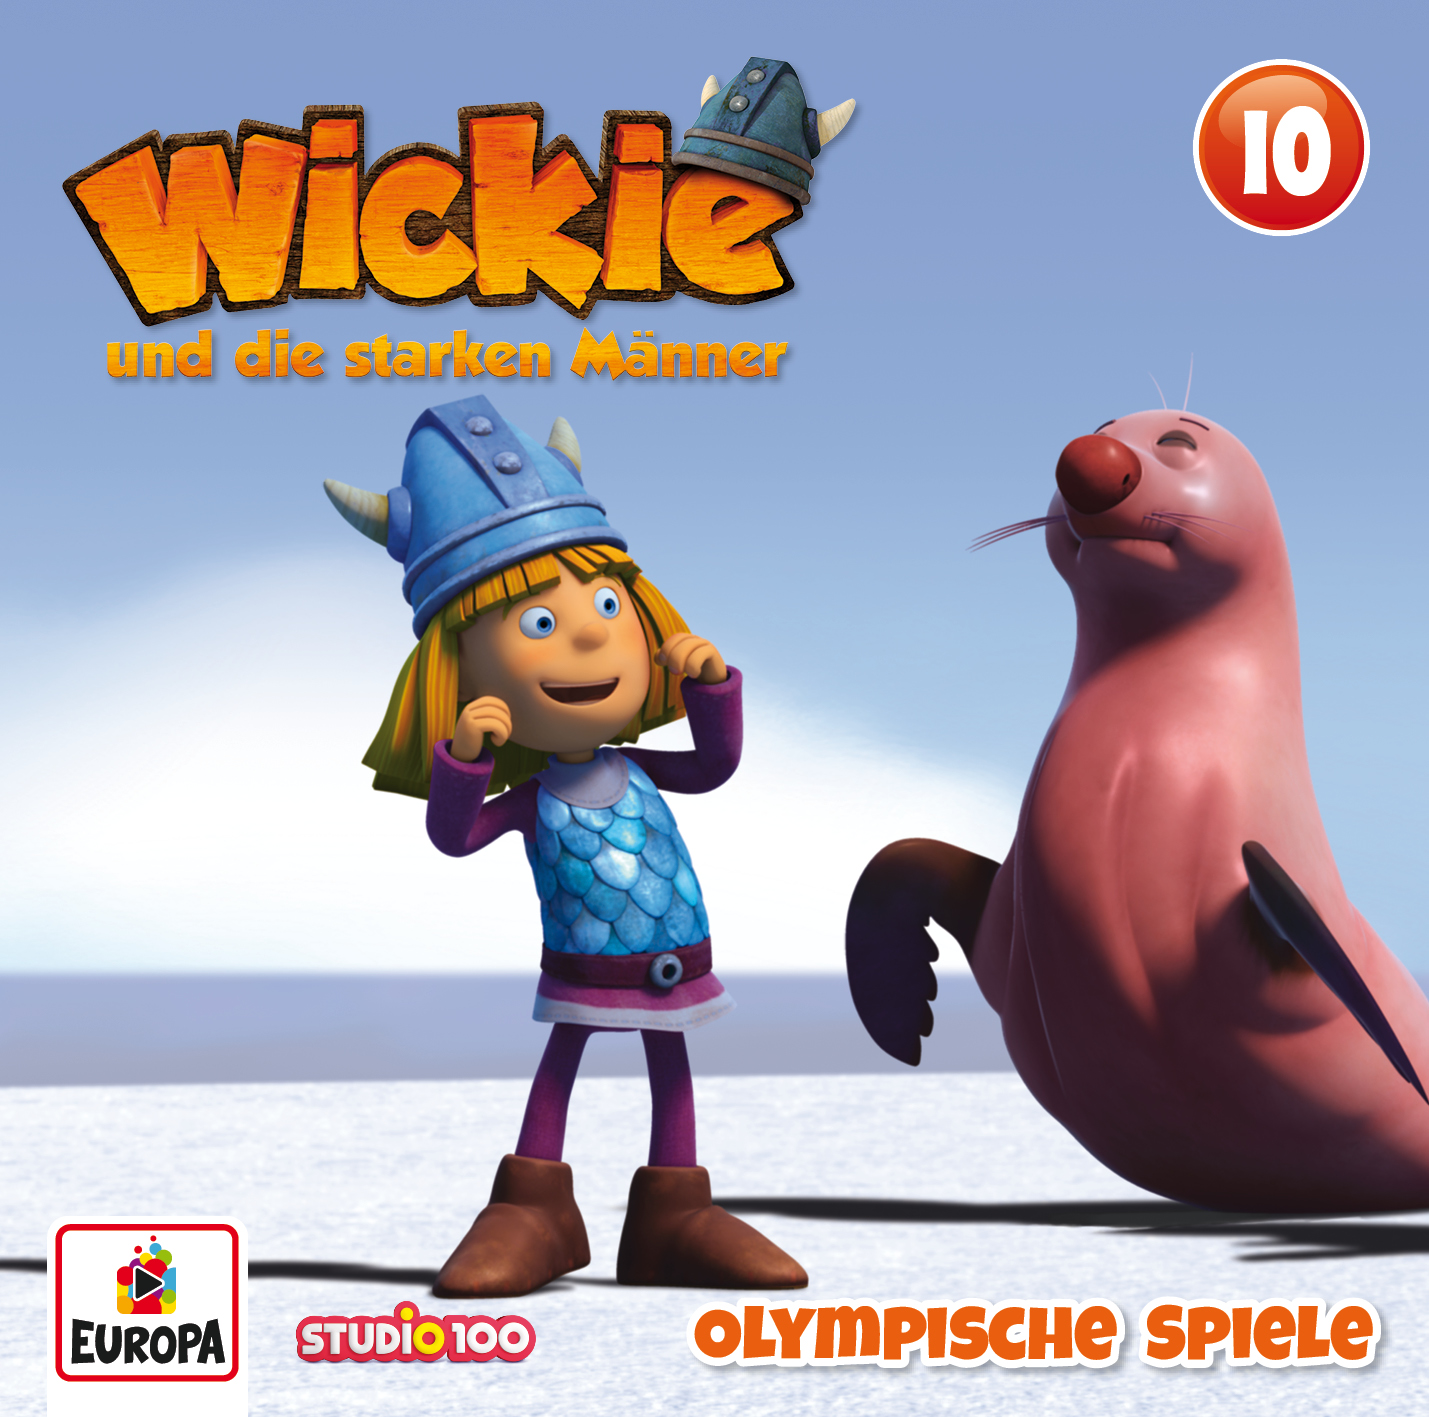 Wickie - Olympische Spiele (CGI)